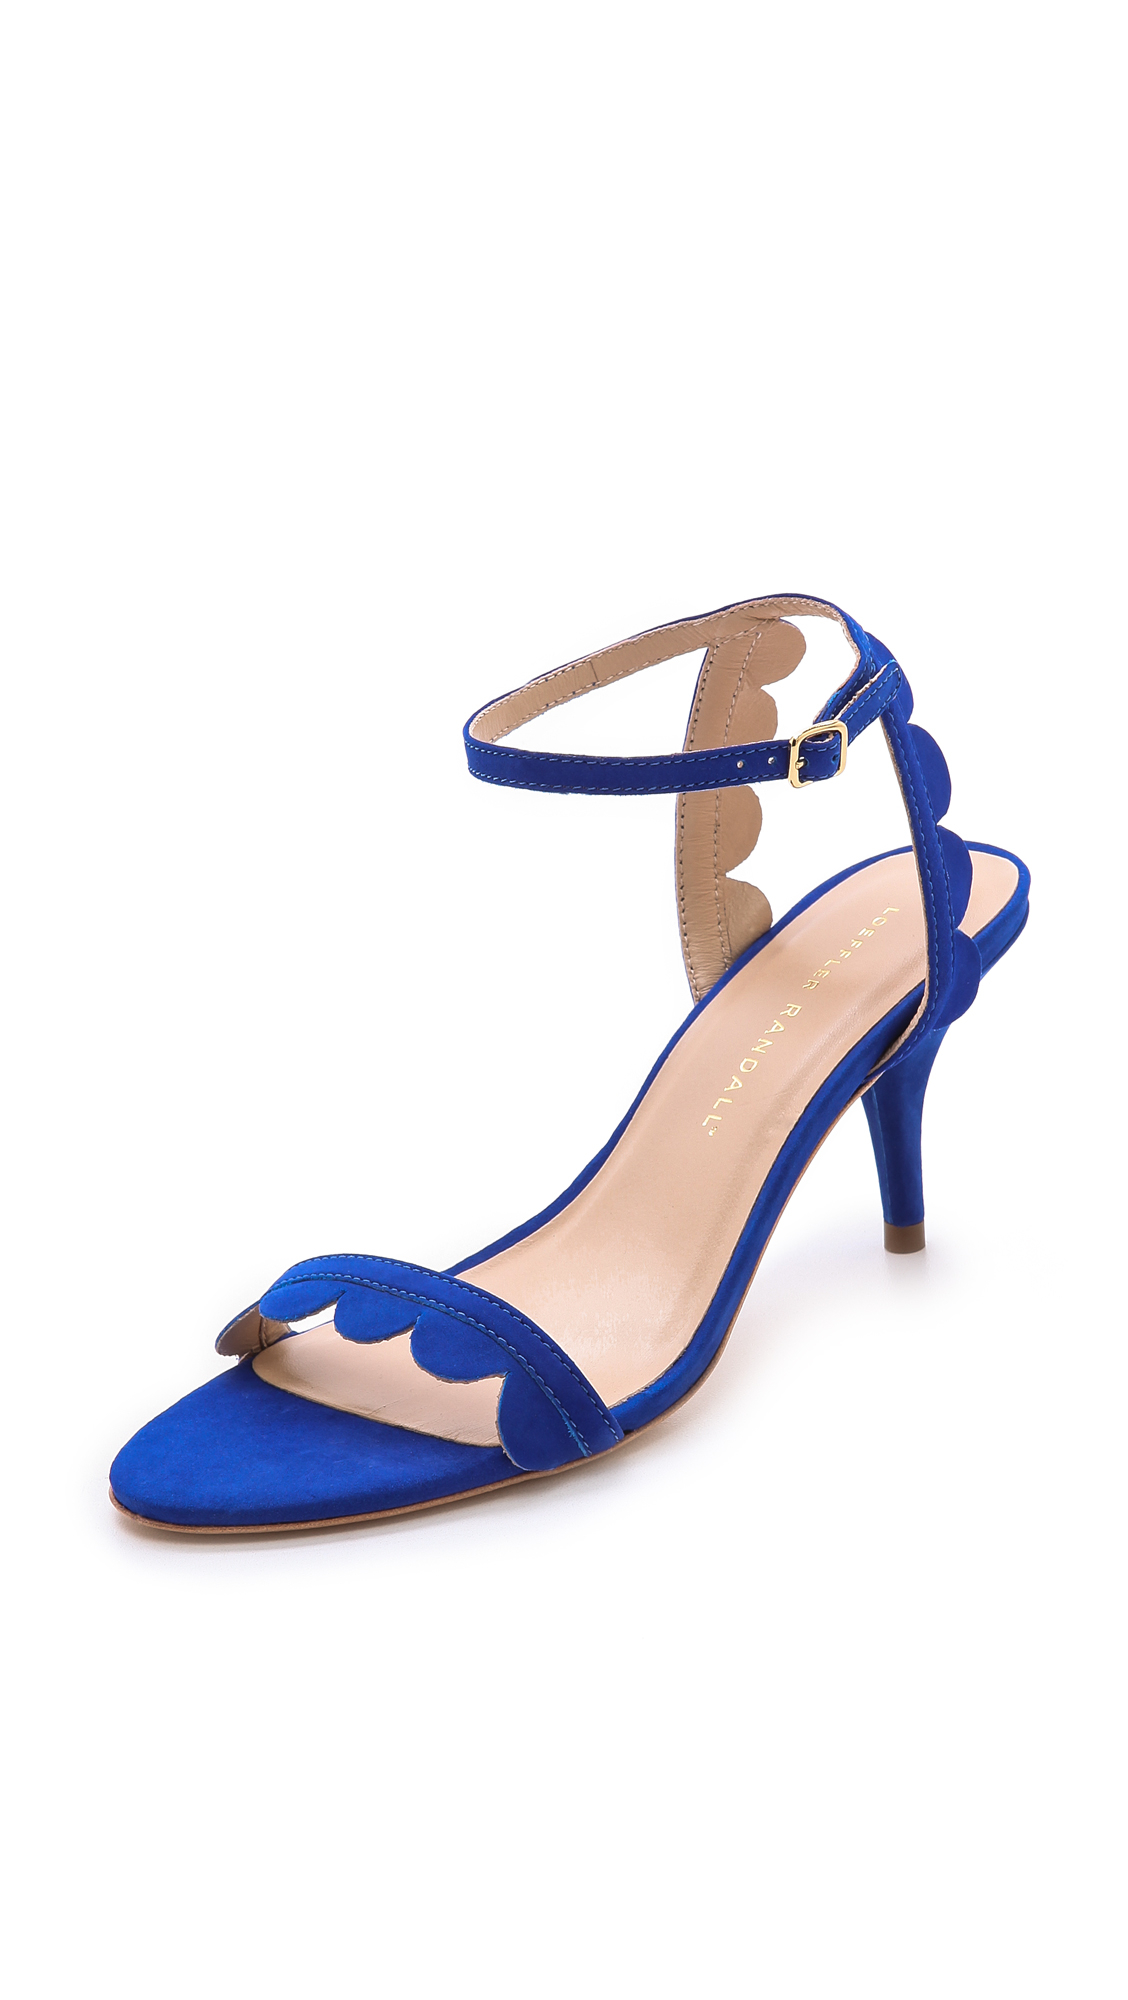 Loeffler randall Lillit Scalloped Kitten Heel Sandals in Blue | Lyst